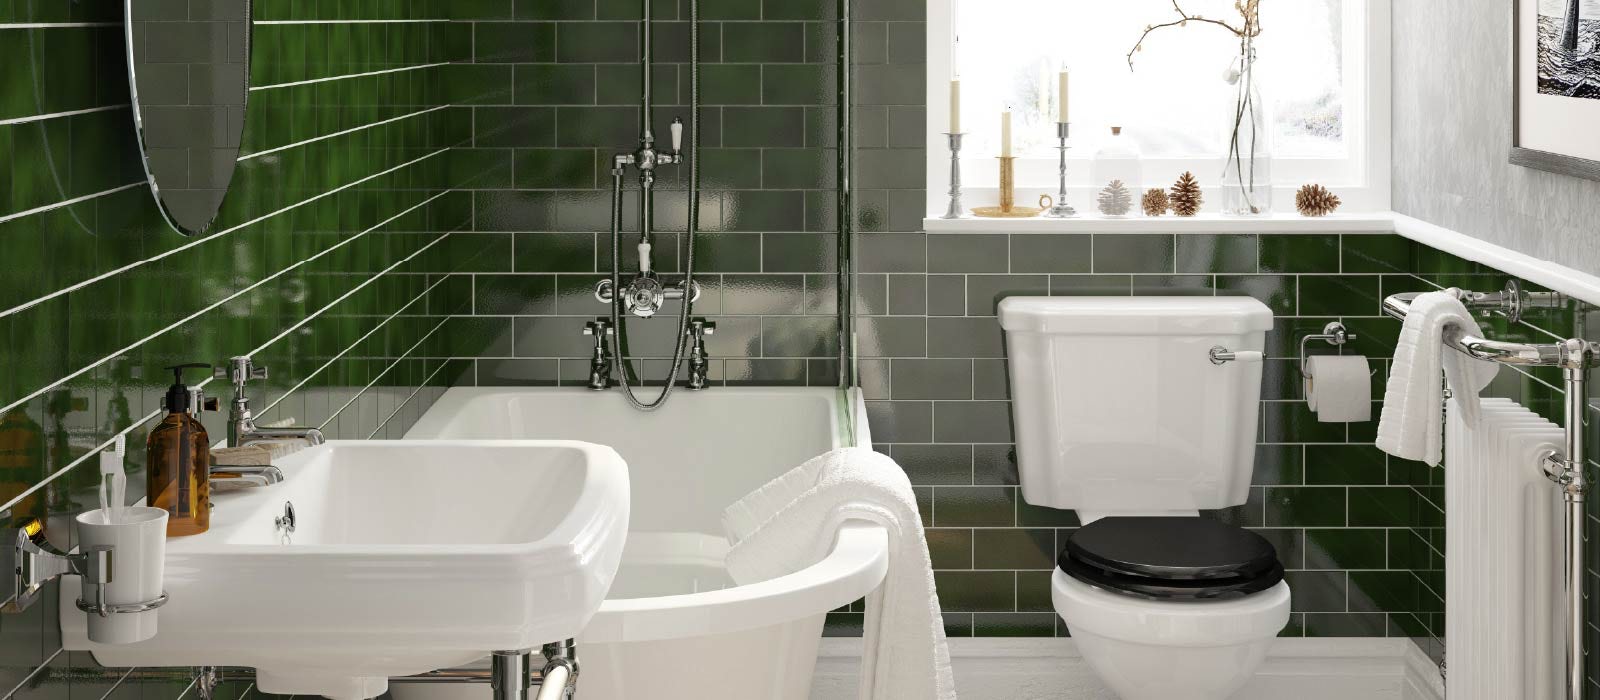 Bathroom wall ideas – 19 striking finishes for washroom walls